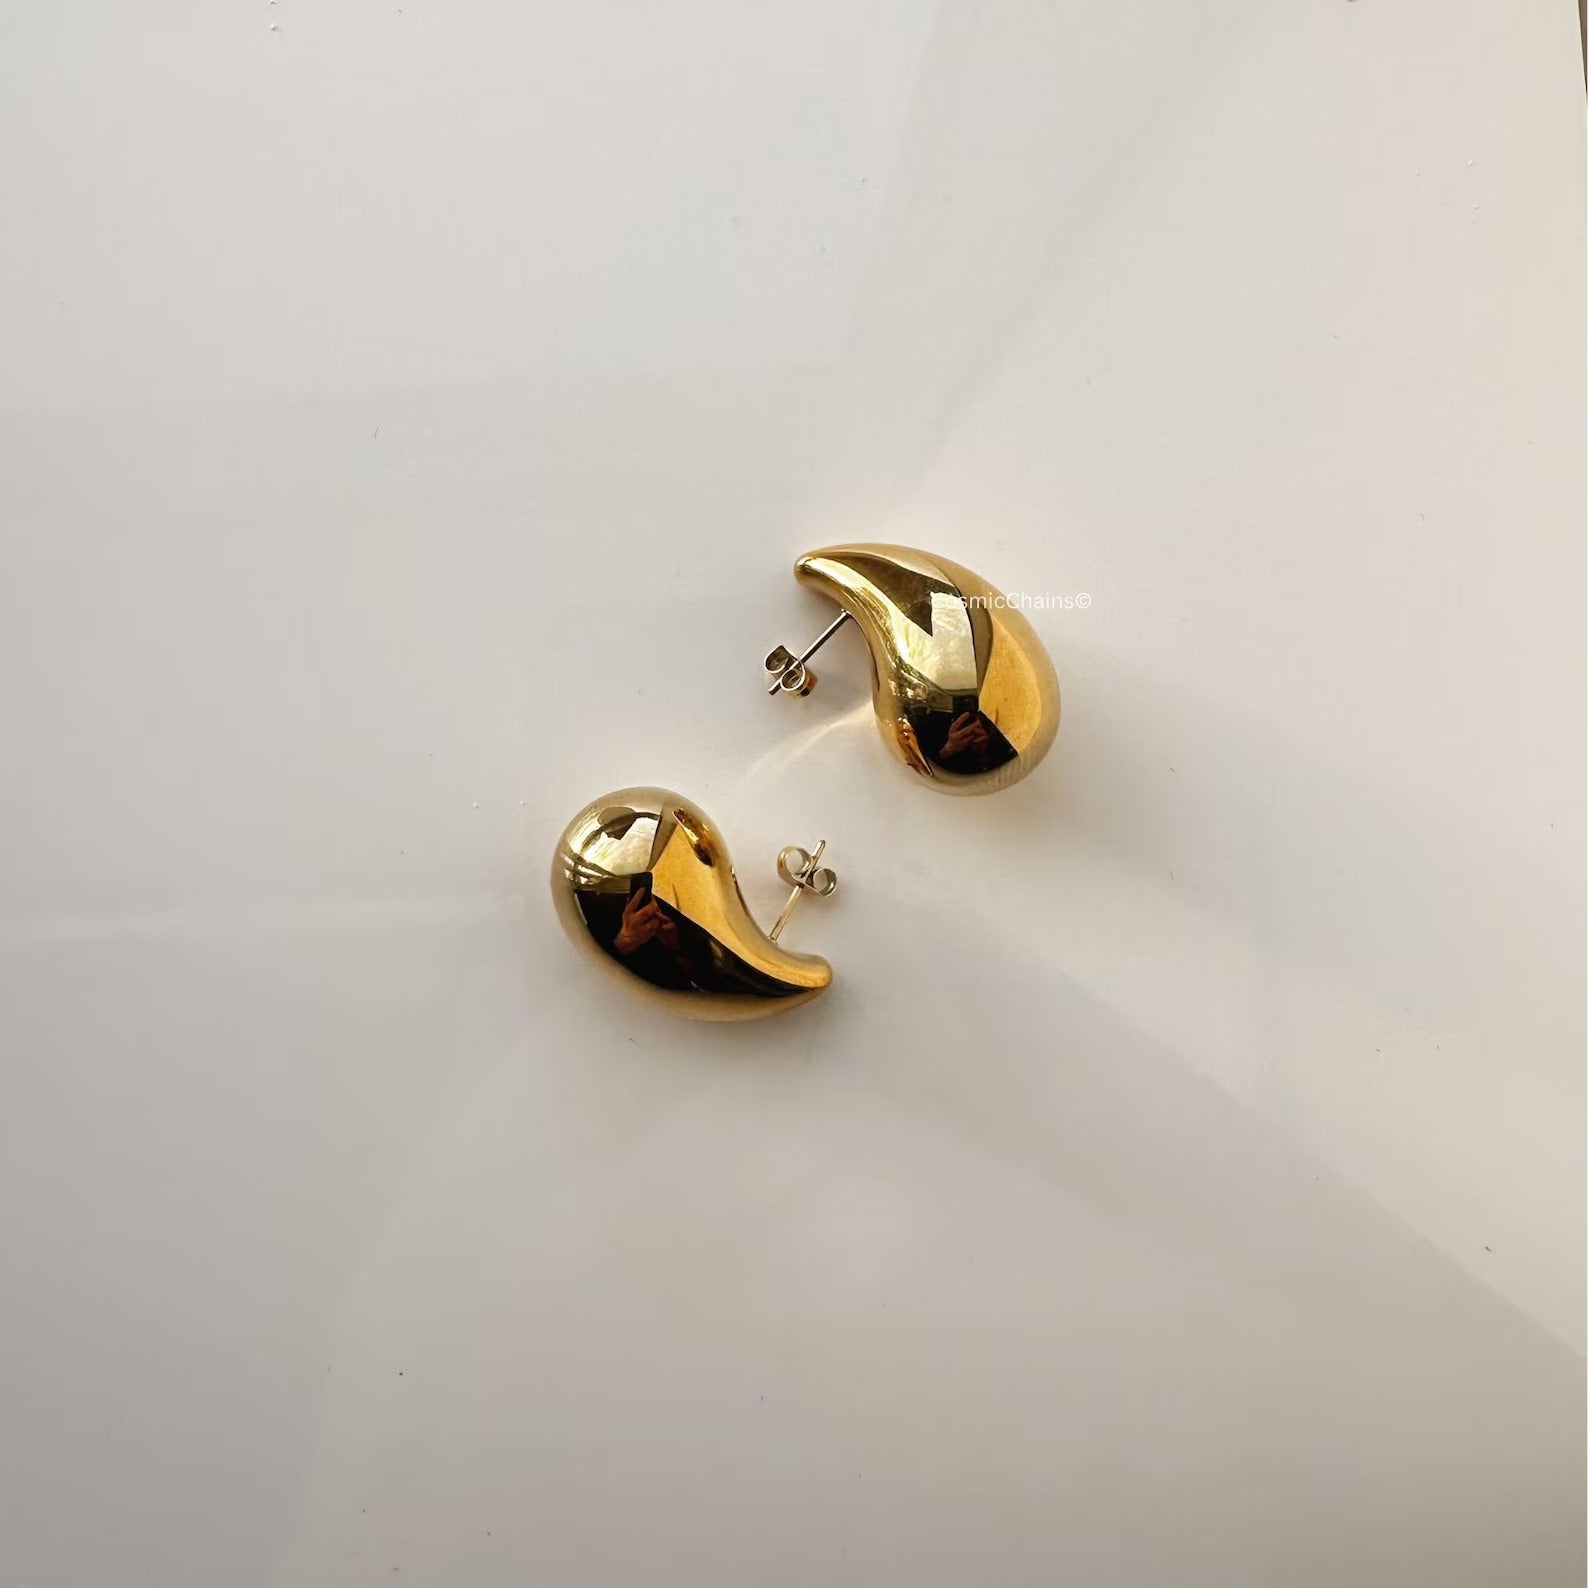 Versatile tear drop earrings for everyday elegance